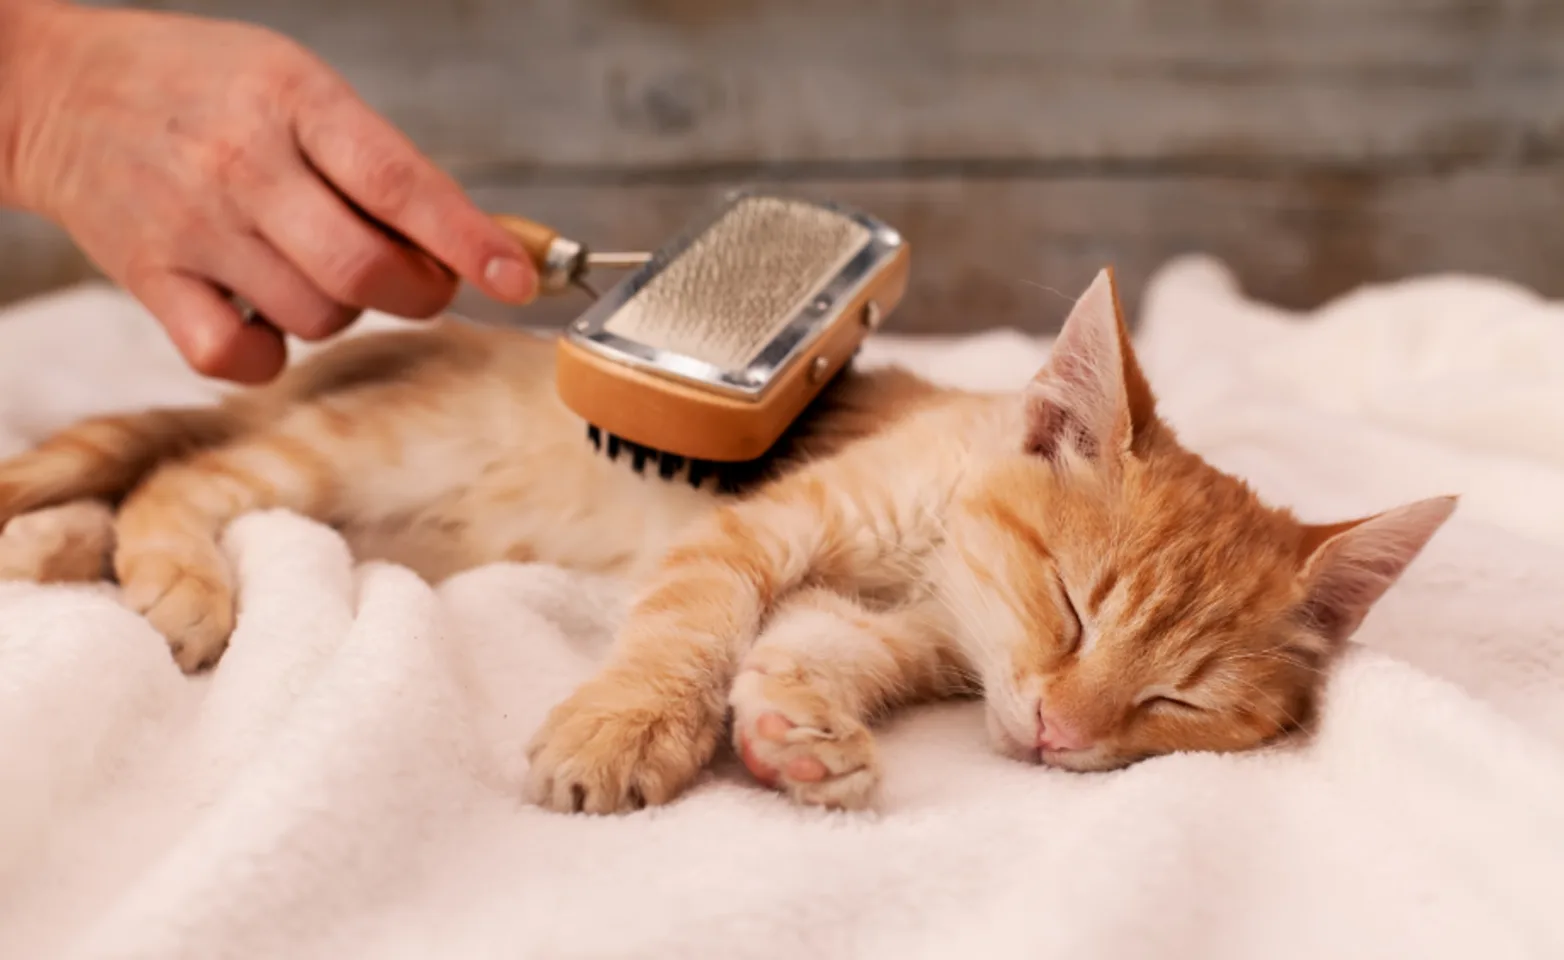 Orange Sleepy Cat Getting Brushed